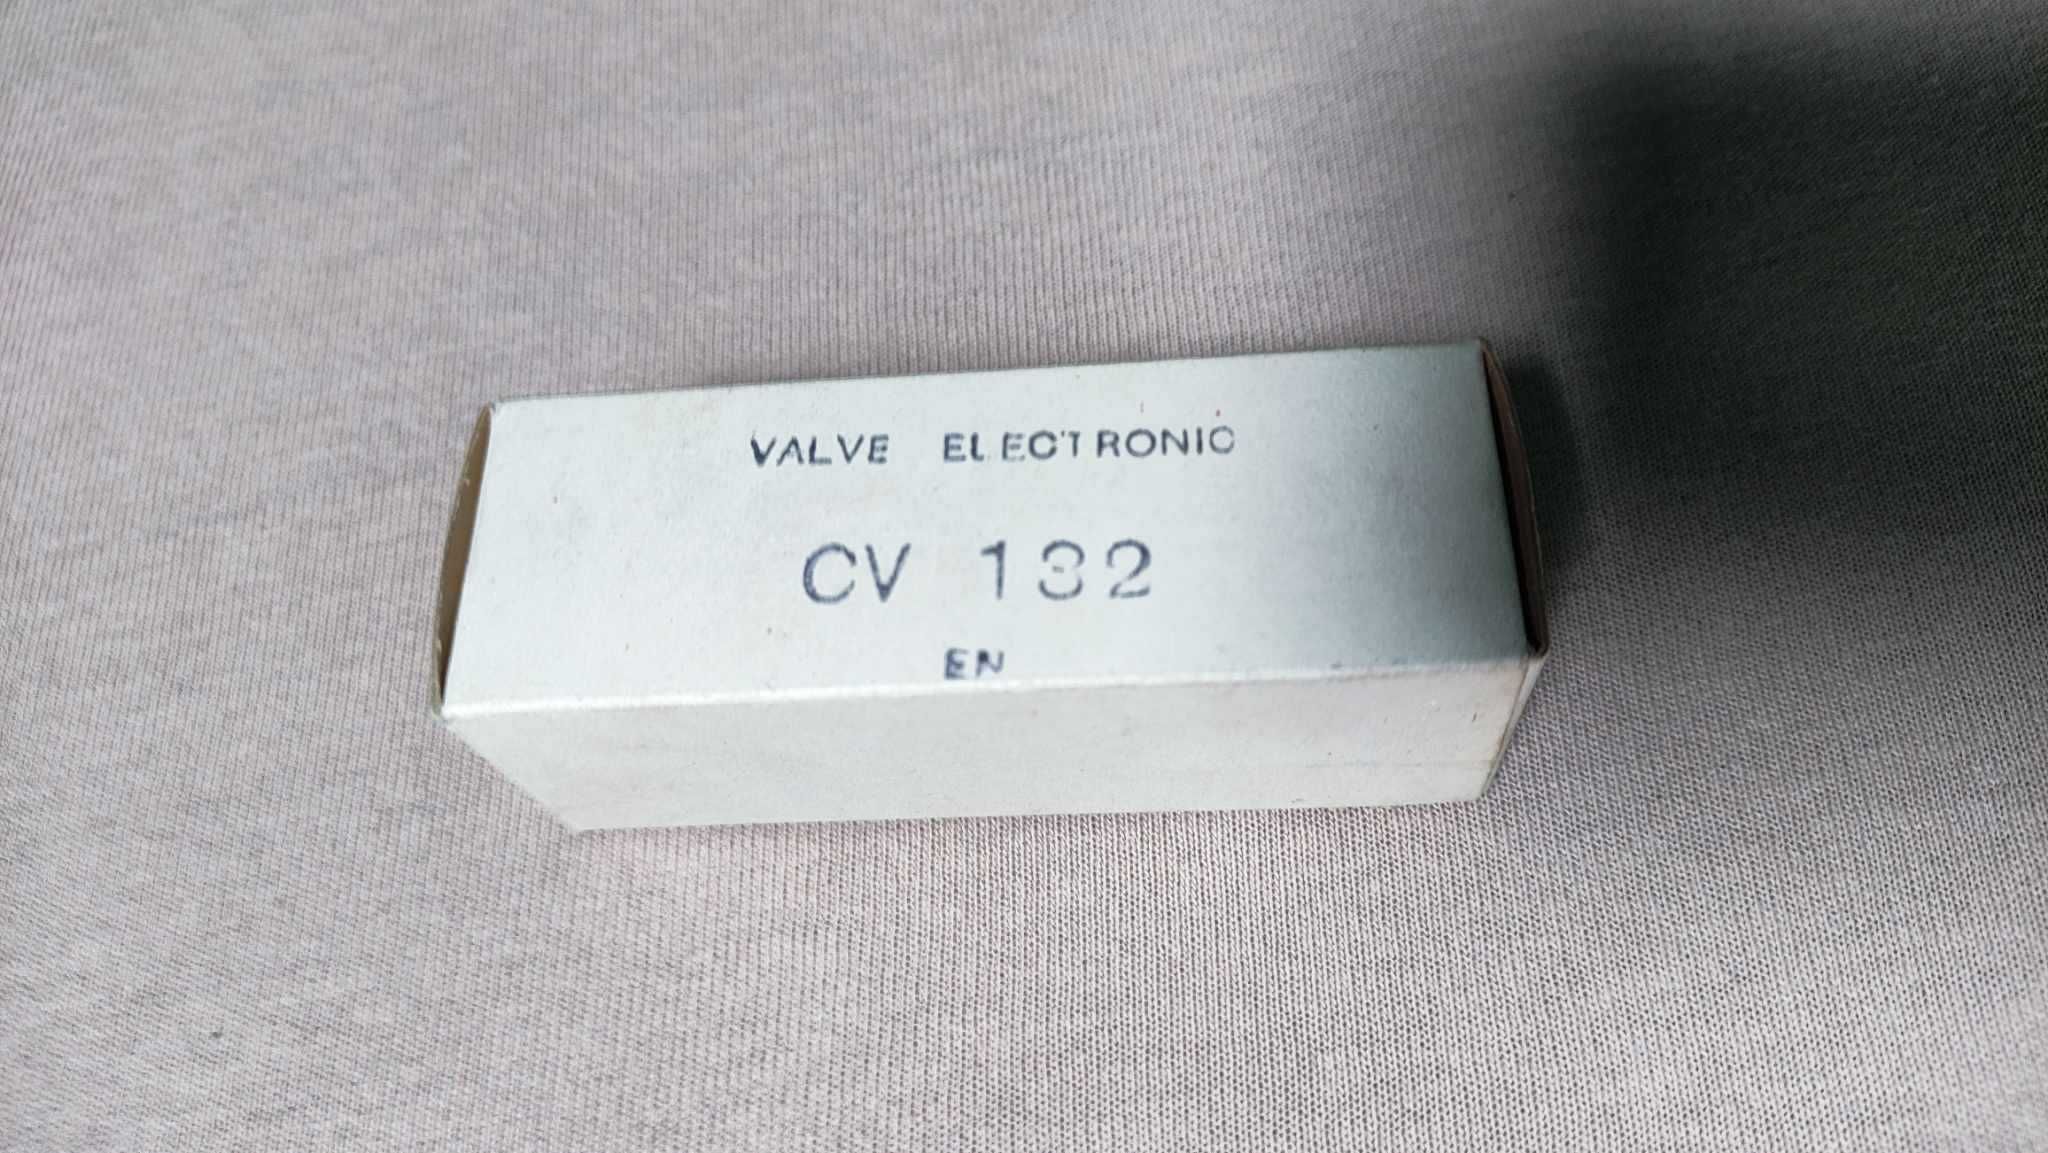 Lampa elektronowa CV132 KB/EN  (valve electronic) EN